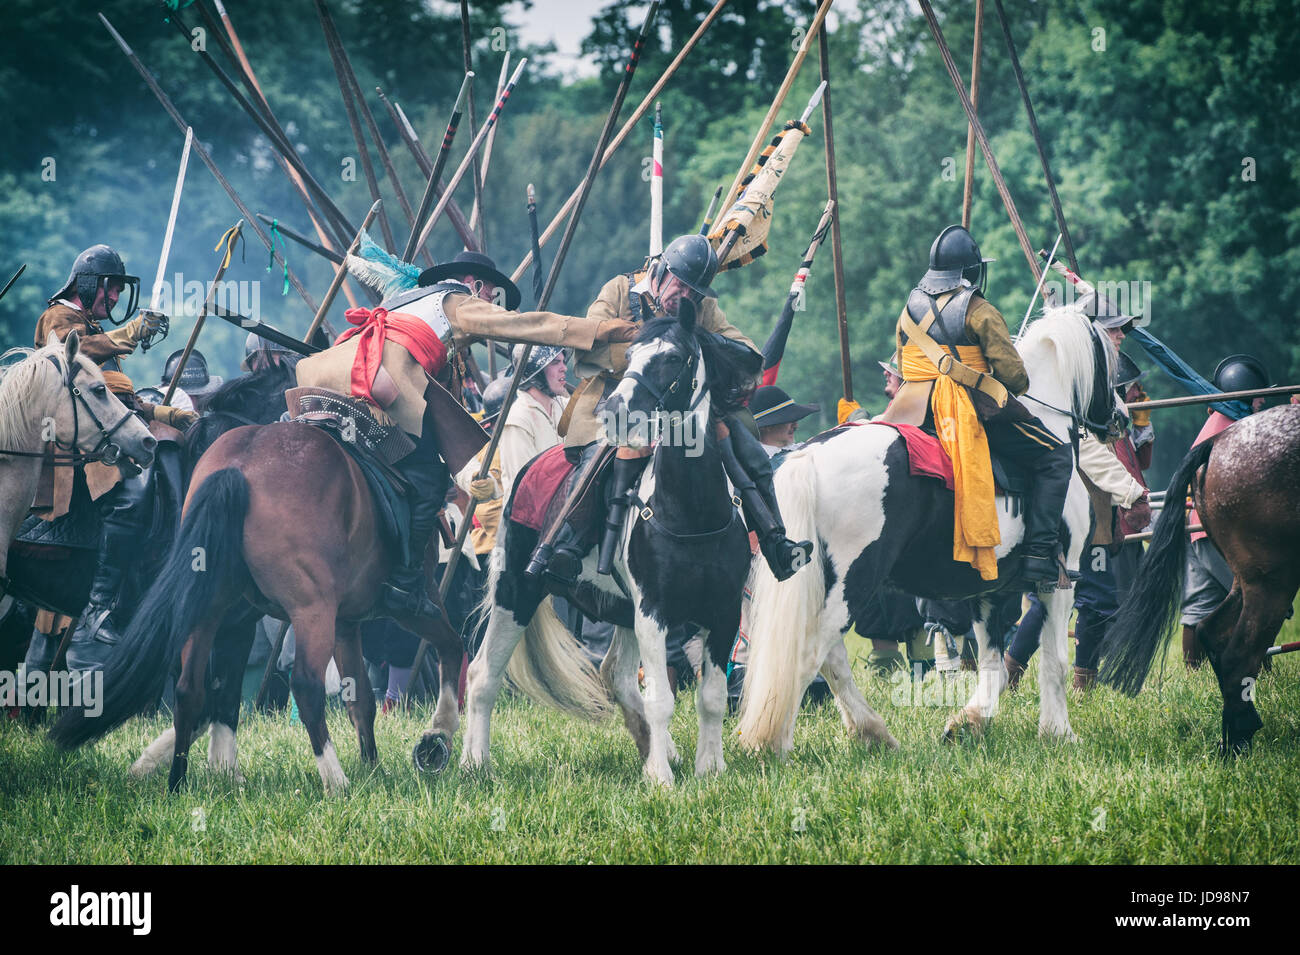 Parlamentarier auf Pferden in die Schlacht bei einem Sealed Knot englischen Civil War Reenactment Event geladen. Charlton Park, Malmesbury, Wiltshire, UK Stockfoto